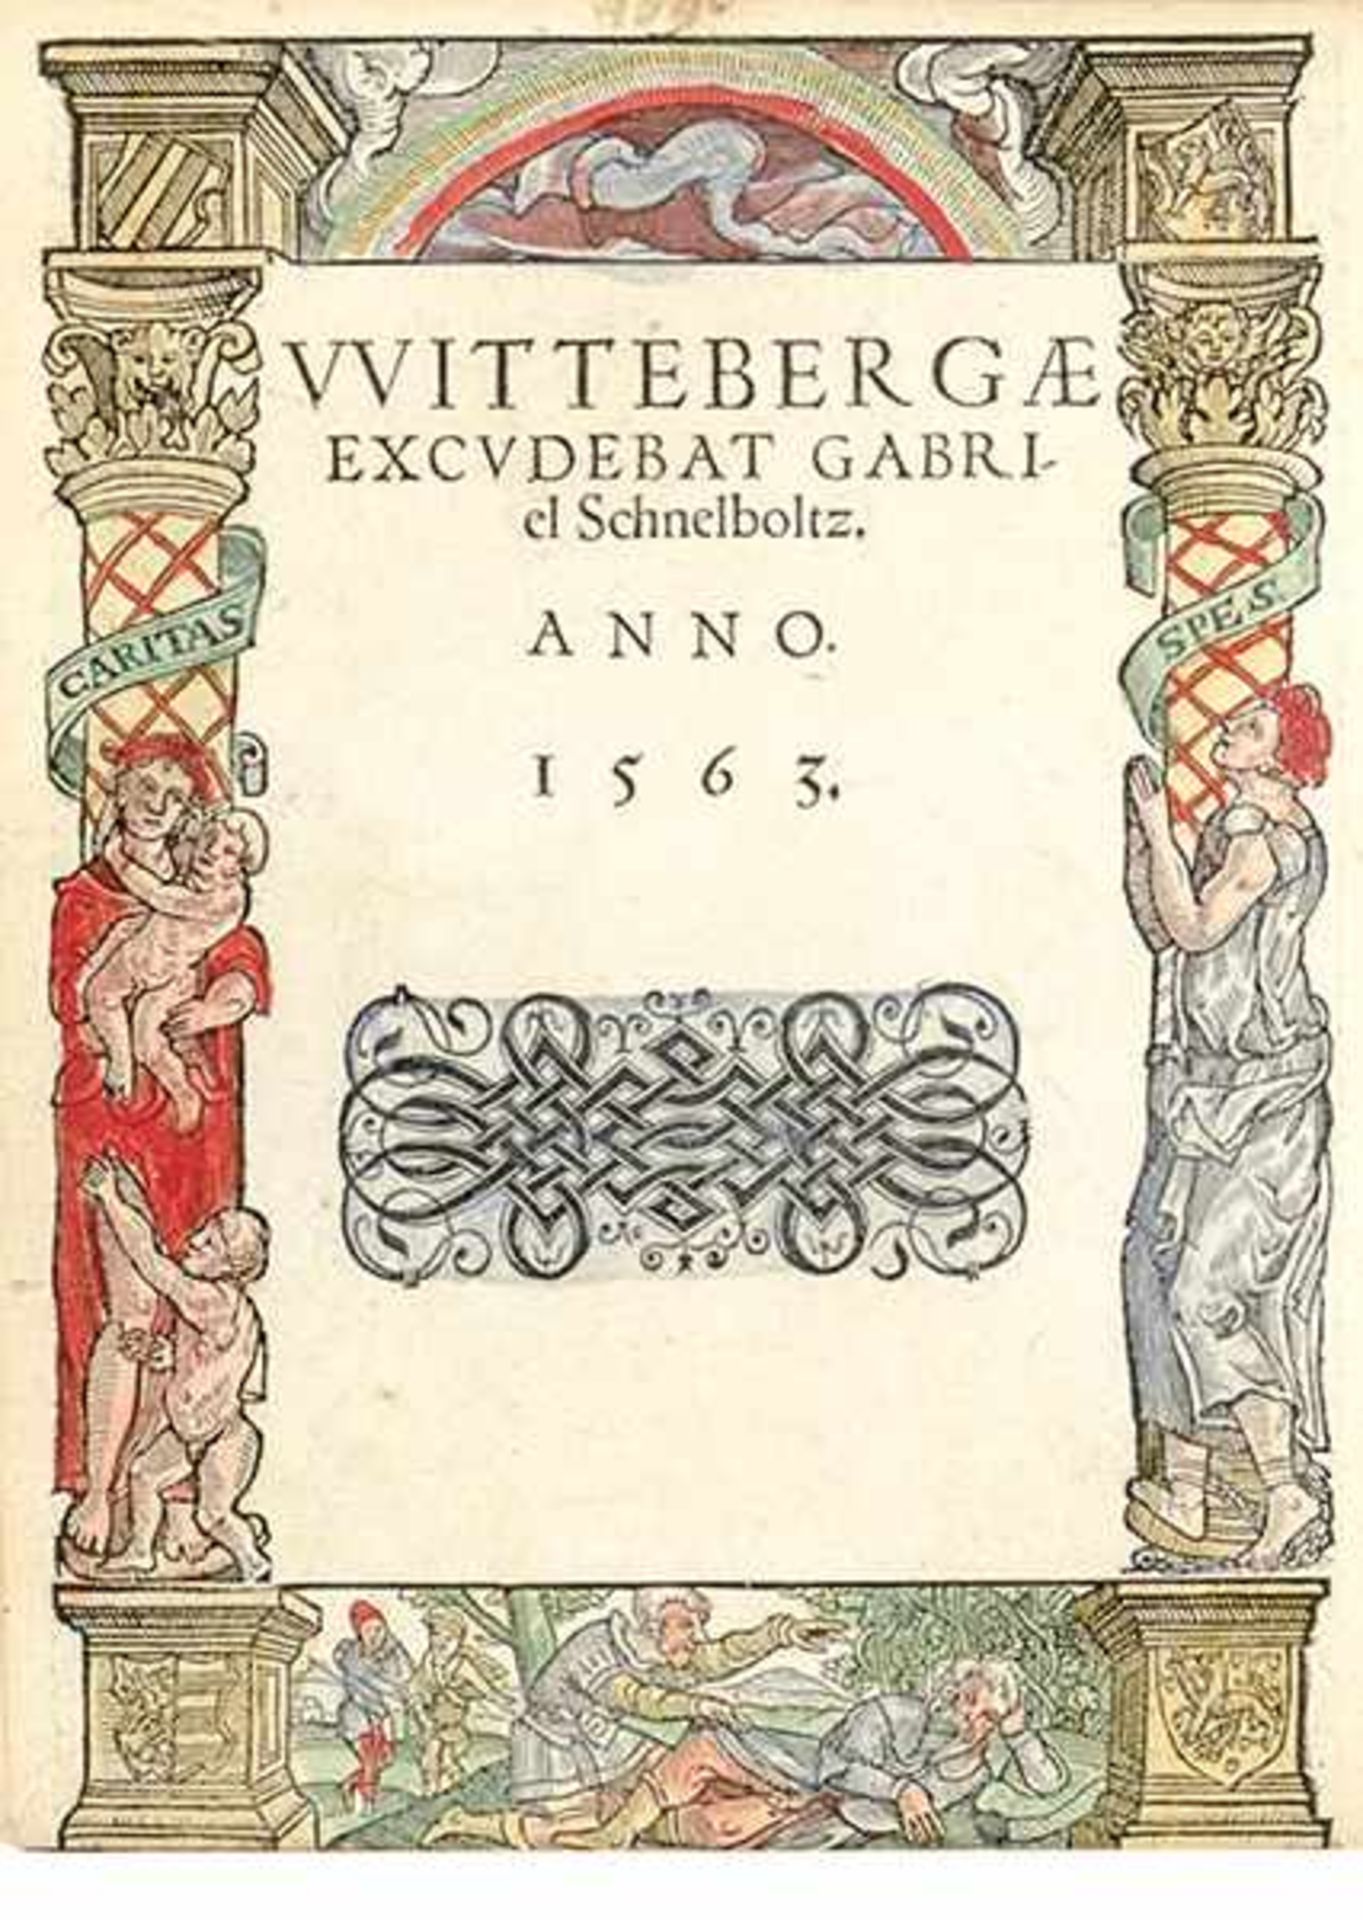 Agricola von Spremberg, Johann. Illustrissimorum Ducum Saxoniae praestantium sapientia, virtute et - Bild 5 aus 12